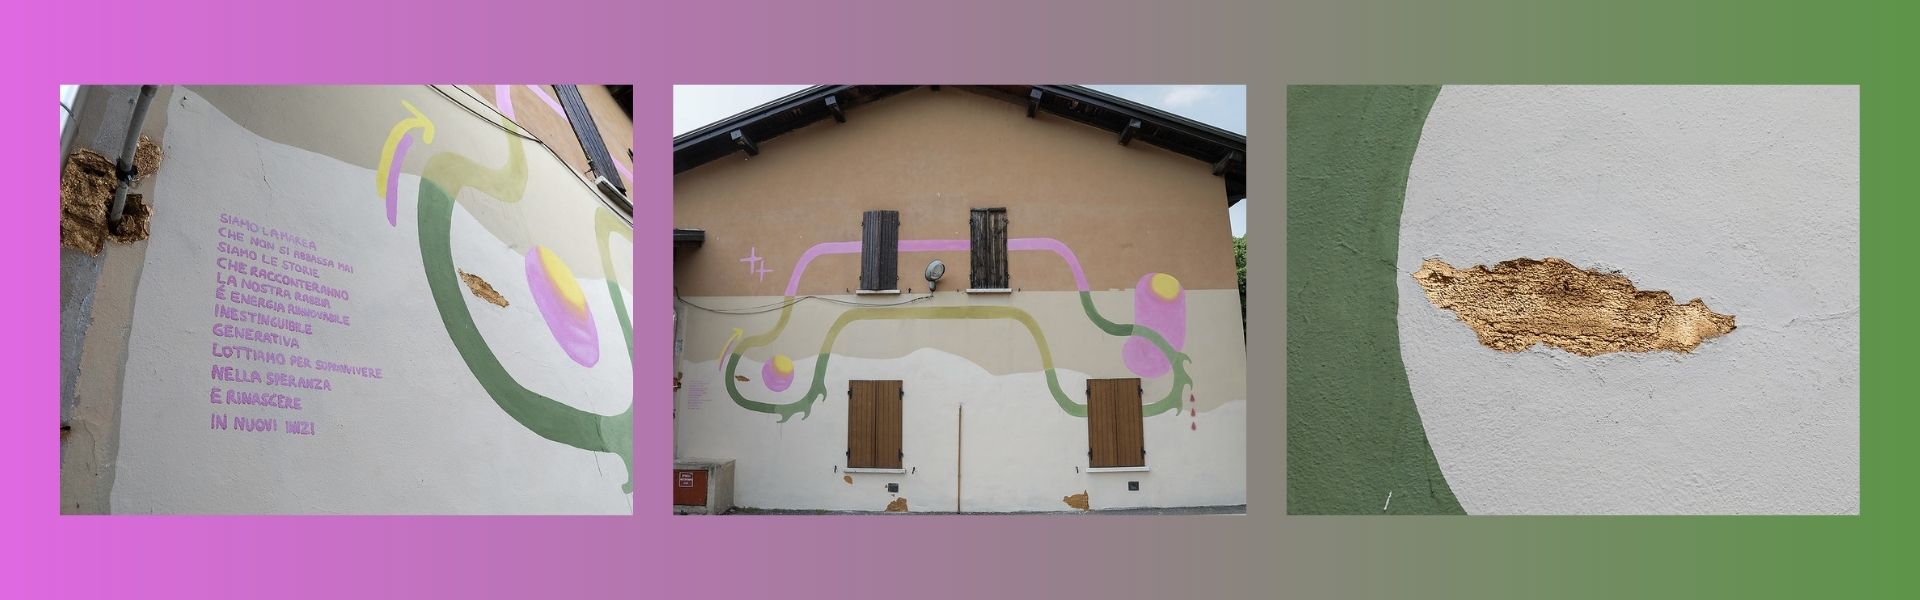 Murales Villaggio Prealpino